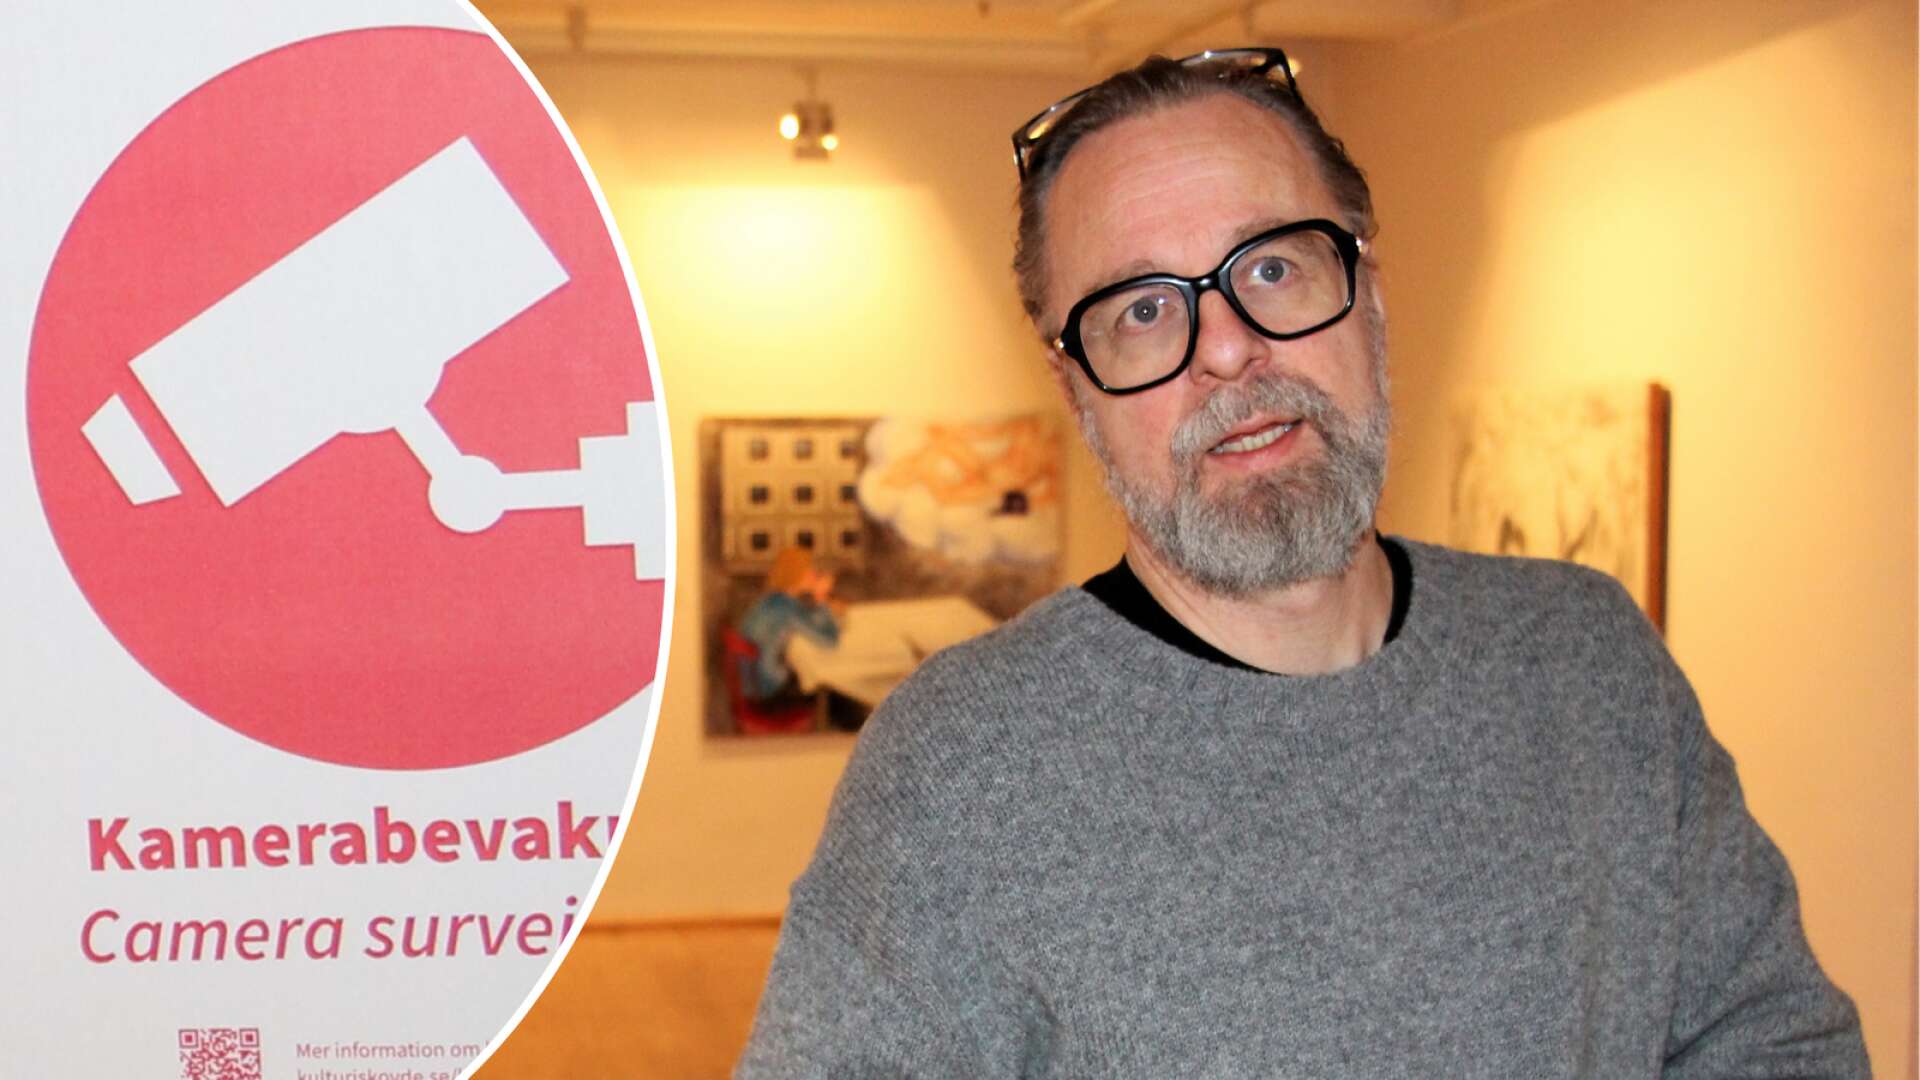 Thomas Oldrell, konstchef i Skövde i kommun, berättar att kamerorna som övervakar konstmuseet har kostat 200 000 kronor att installera.